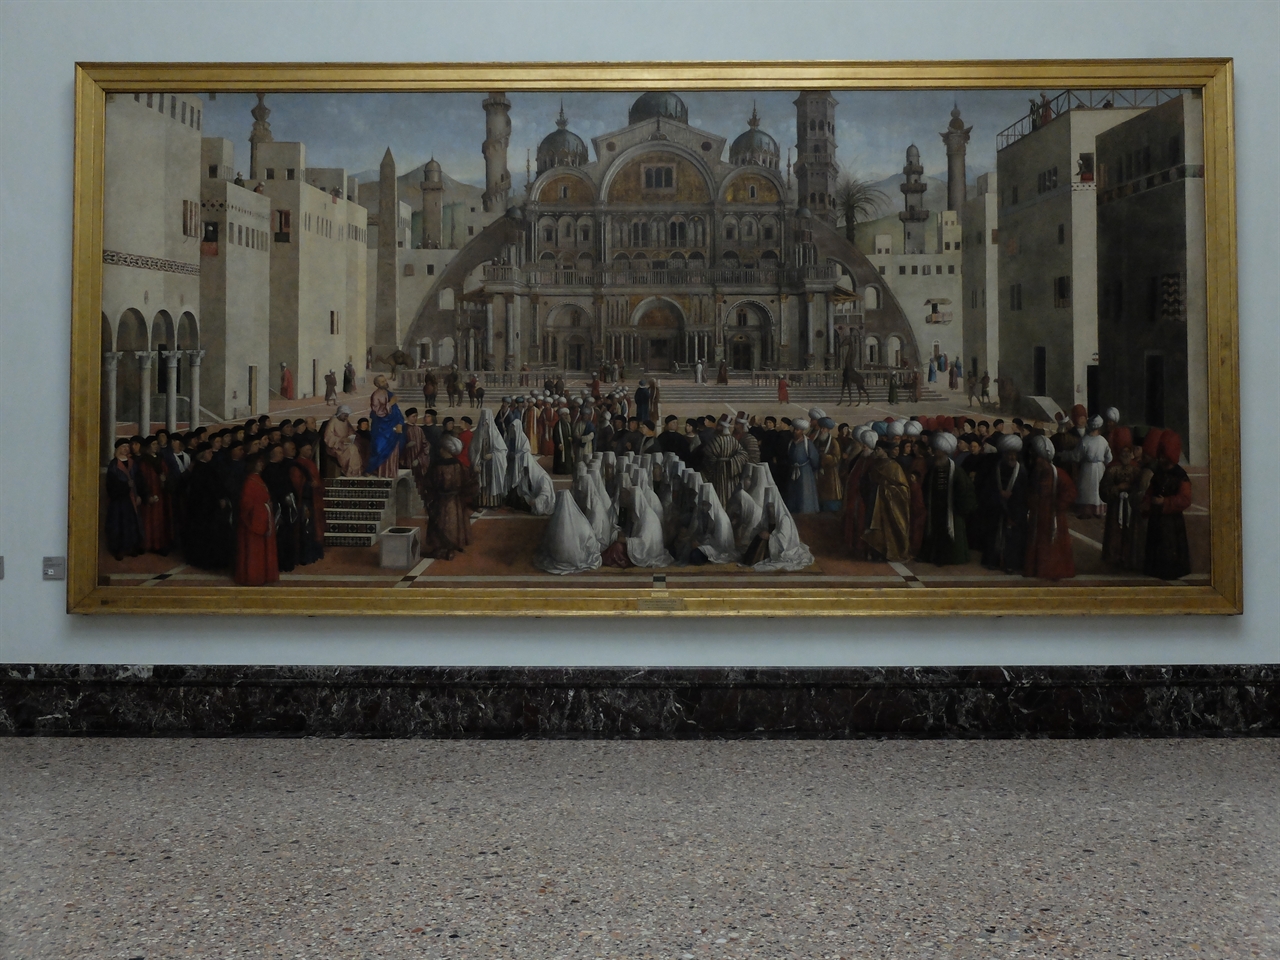 젠틸레 벨리니, 조반니 벨리니, '알렉산드리아에서 설교하는 성 마르코', 밀라노 브레라 미술관. 이 그림은 벨리니 형제가 함께 작업한 대작으로 이집트 알렉산드리아의 이국적인 풍광이 돋보입니다.